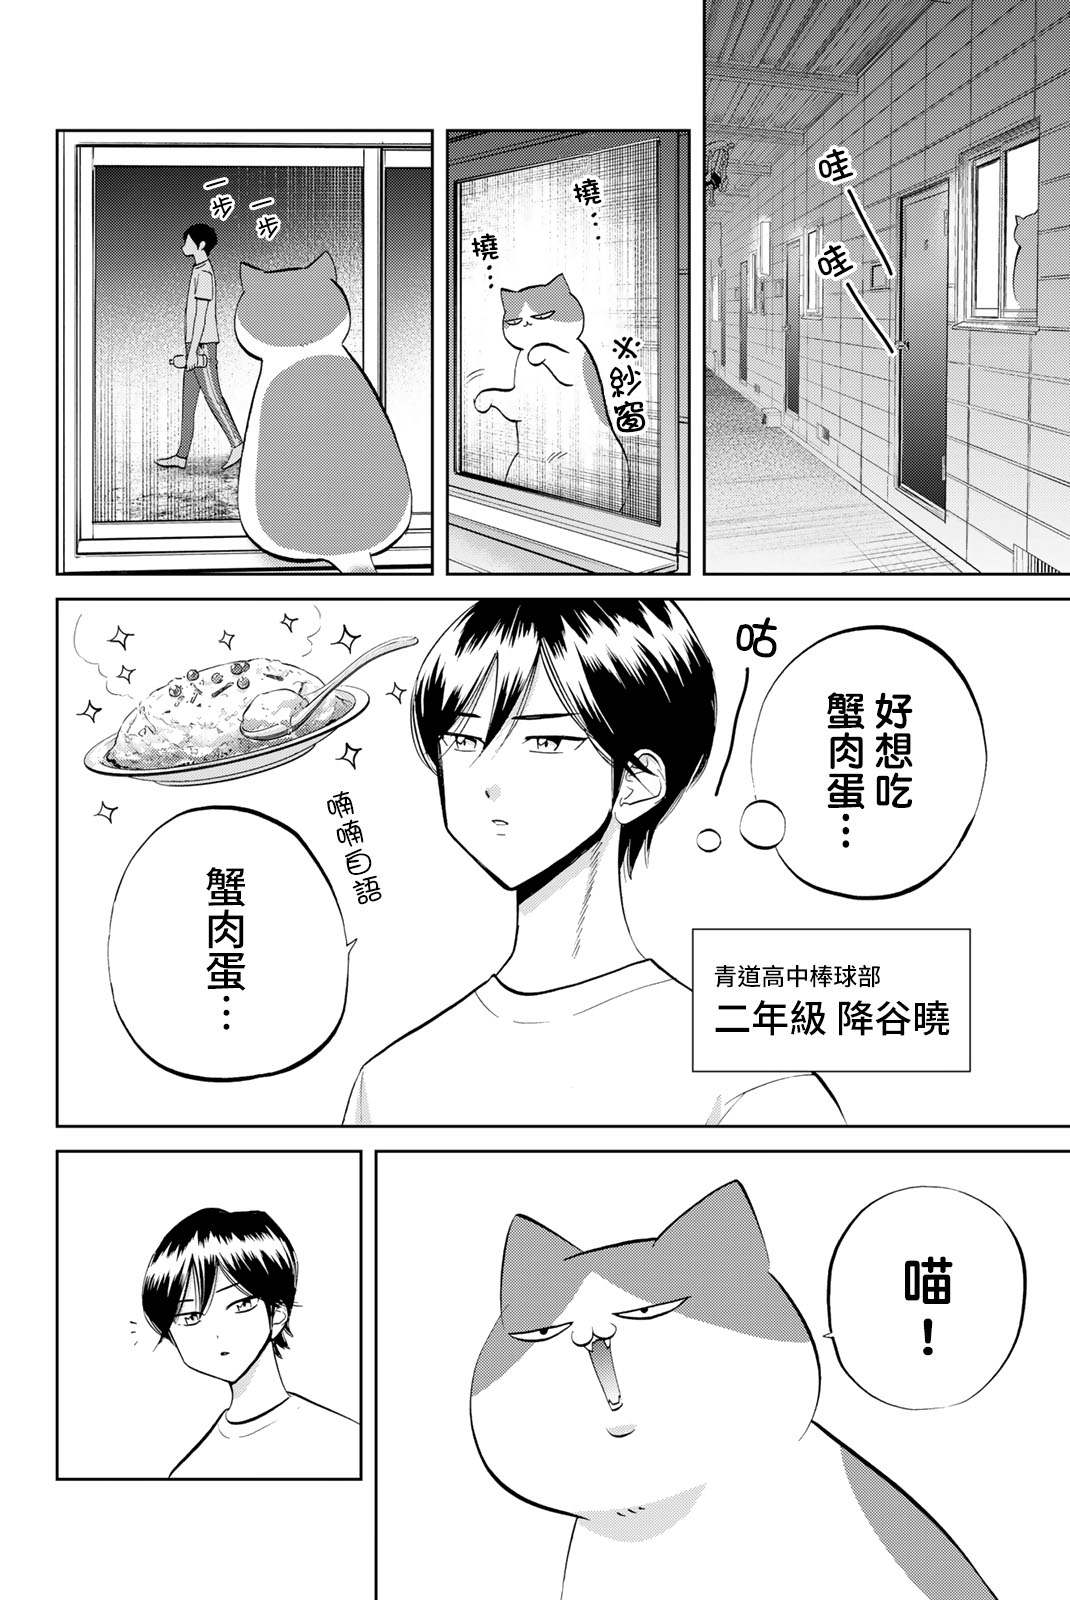 鑽石貓貓!!青道高中棒球部貓日誌 - 第2話 - 2